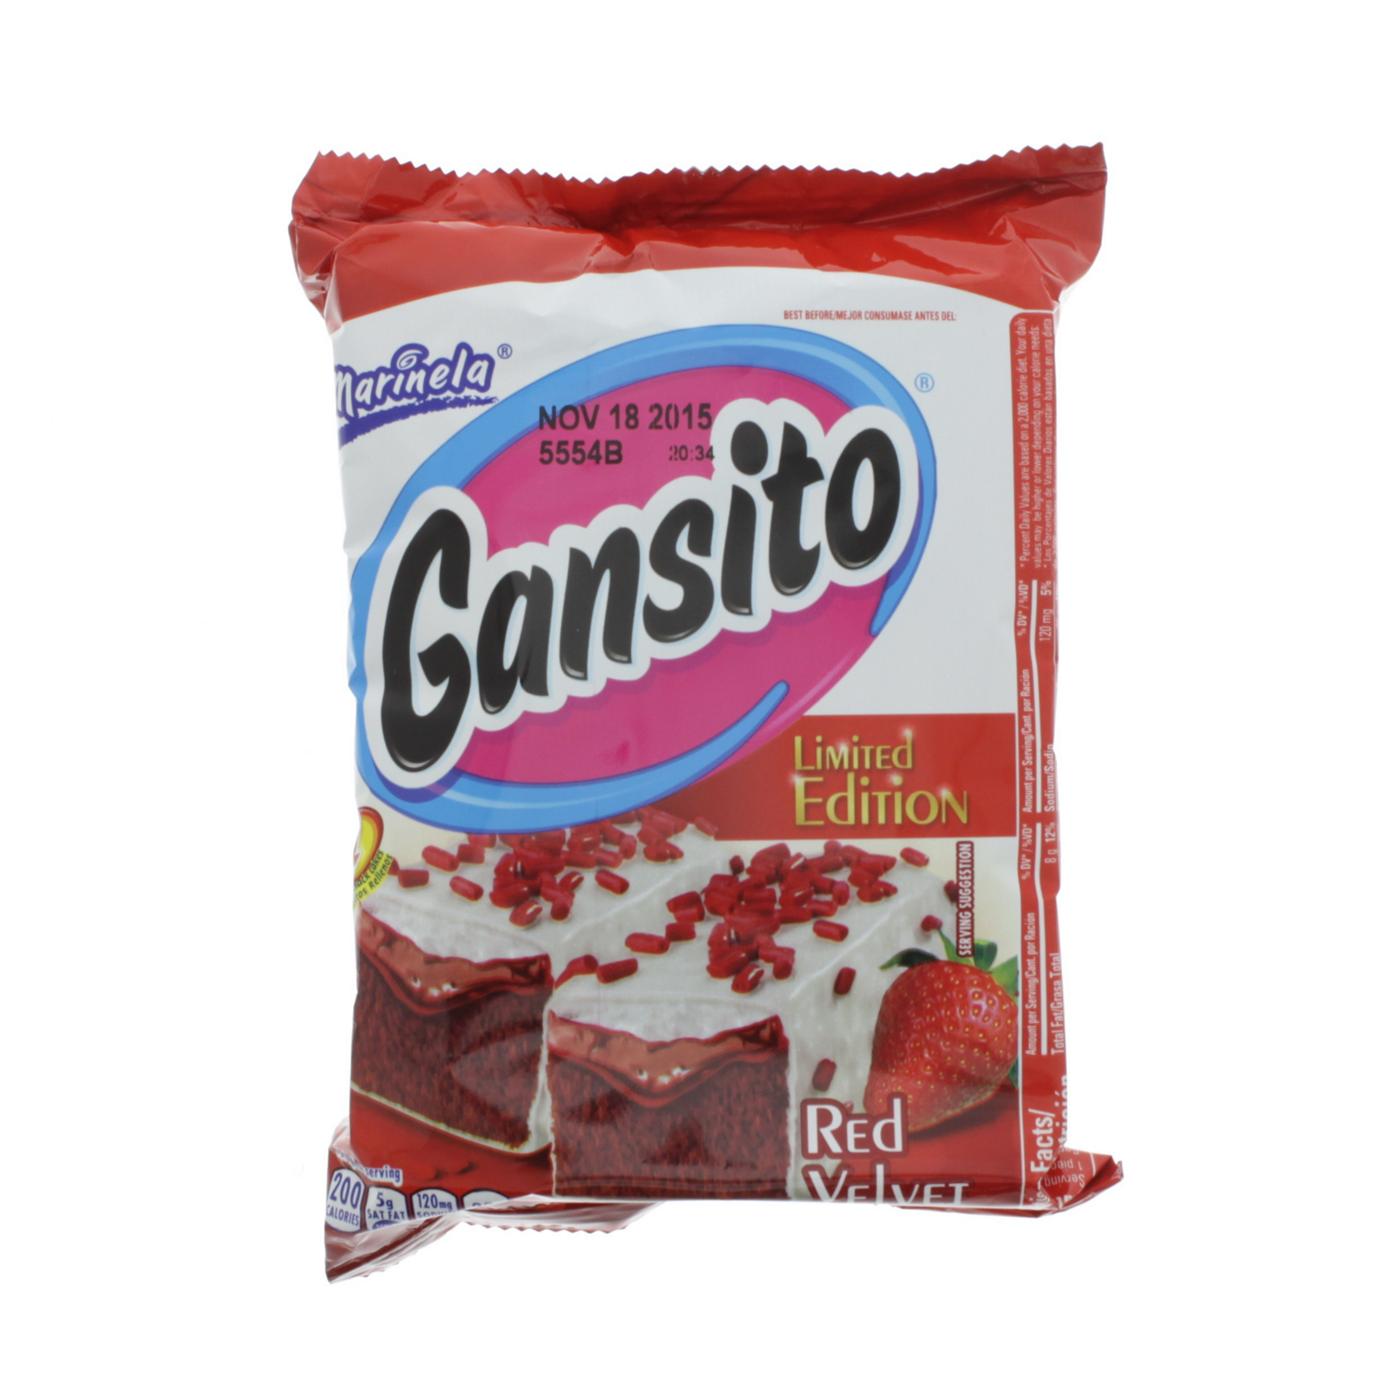 Marinela Gansito Strawberry Limited Edition; image 1 of 2